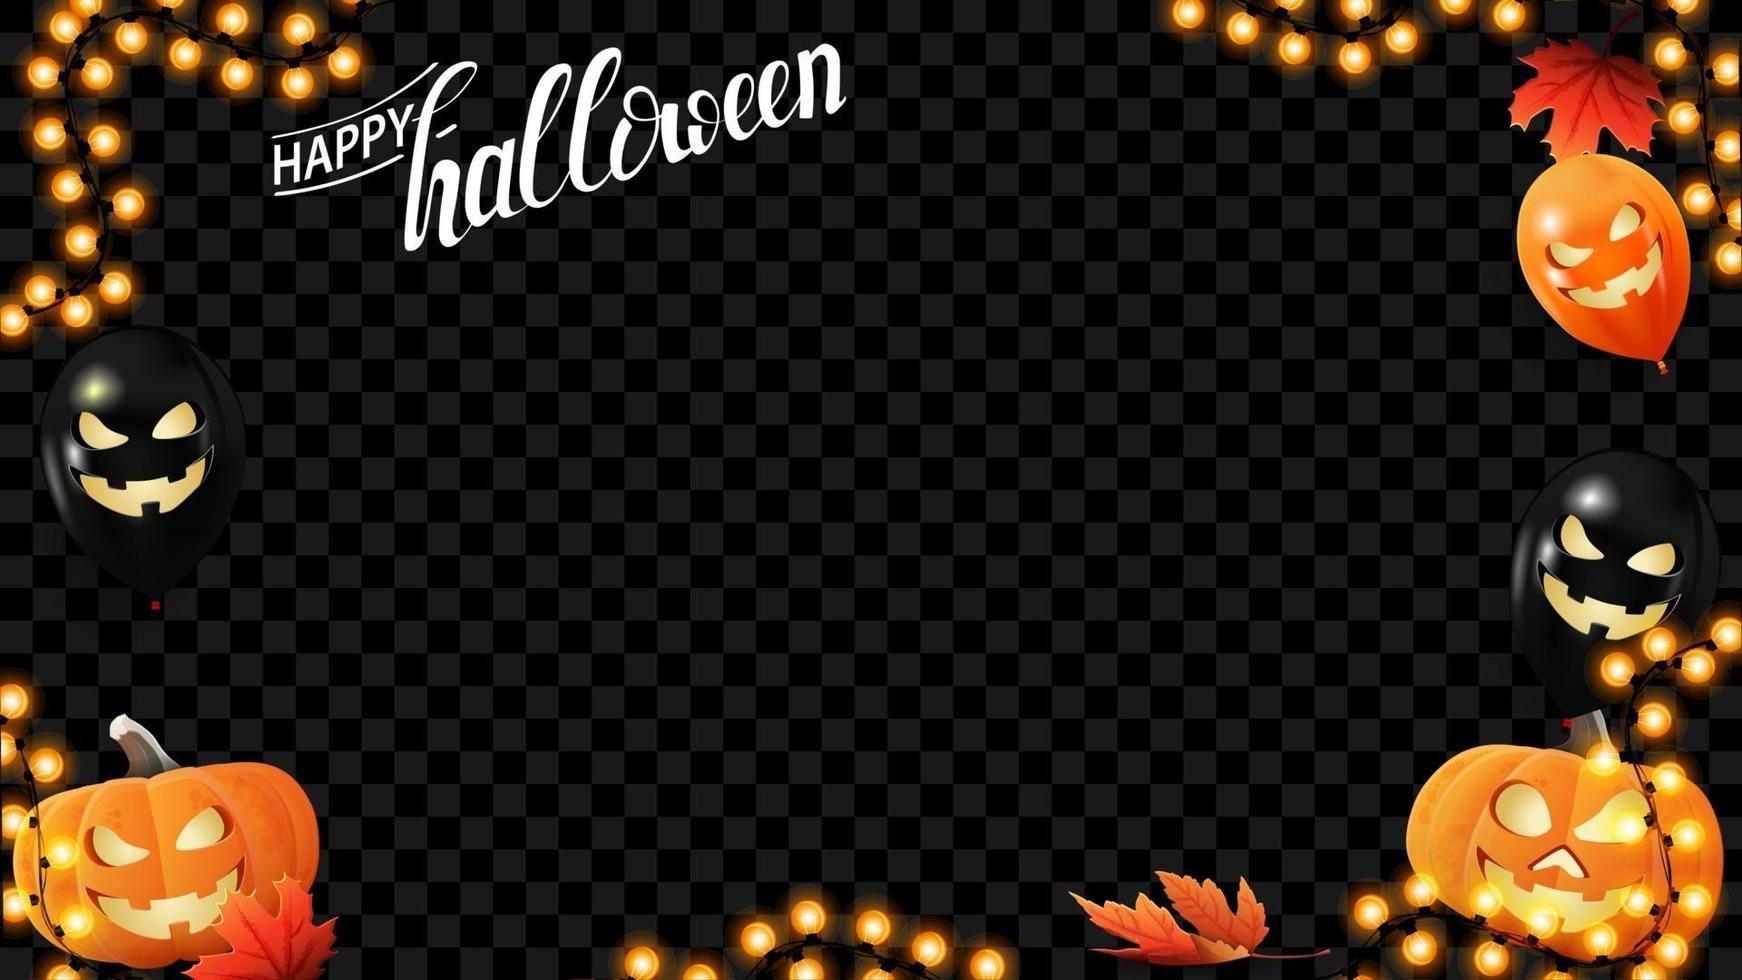 joyeux halloween, modèle de cadre horizontal pour votre création. cadre de guirlande avec des ballons d'halloween, des feuilles de citrouille et d'automne isolés sur fond noir vecteur